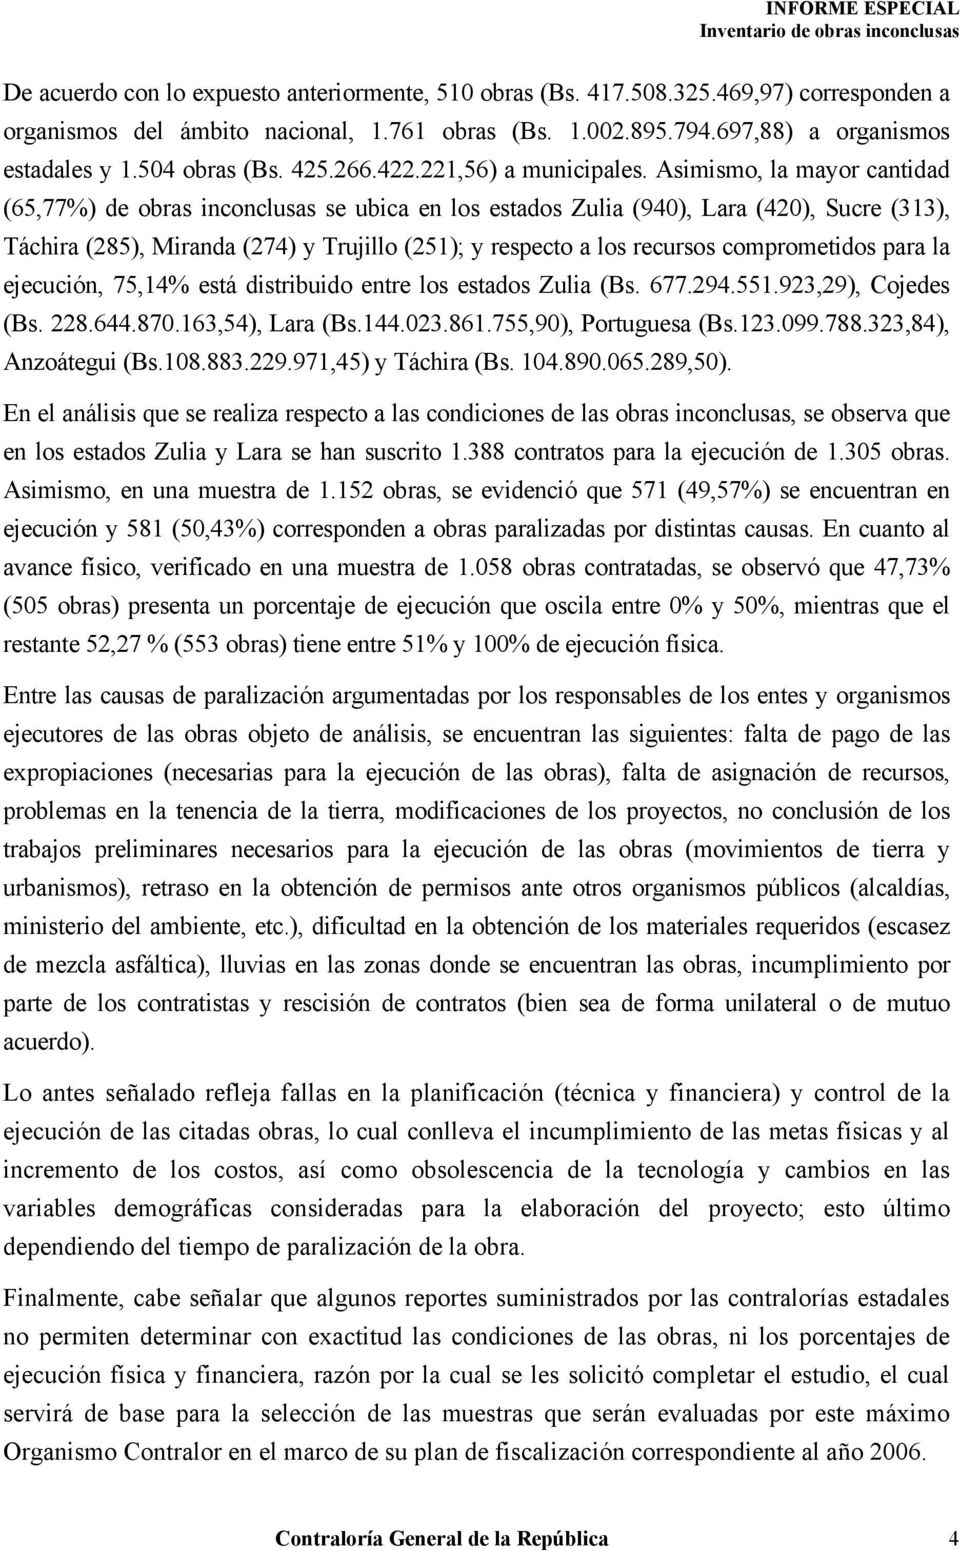 Asimismo, la mayor cantidad (65,77%) de obras inconclusas se ubica en los estados Zulia (940), Lara (420), Sucre (313), Táchira (285), Miranda (274) y Trujillo (251); y respecto a los recursos